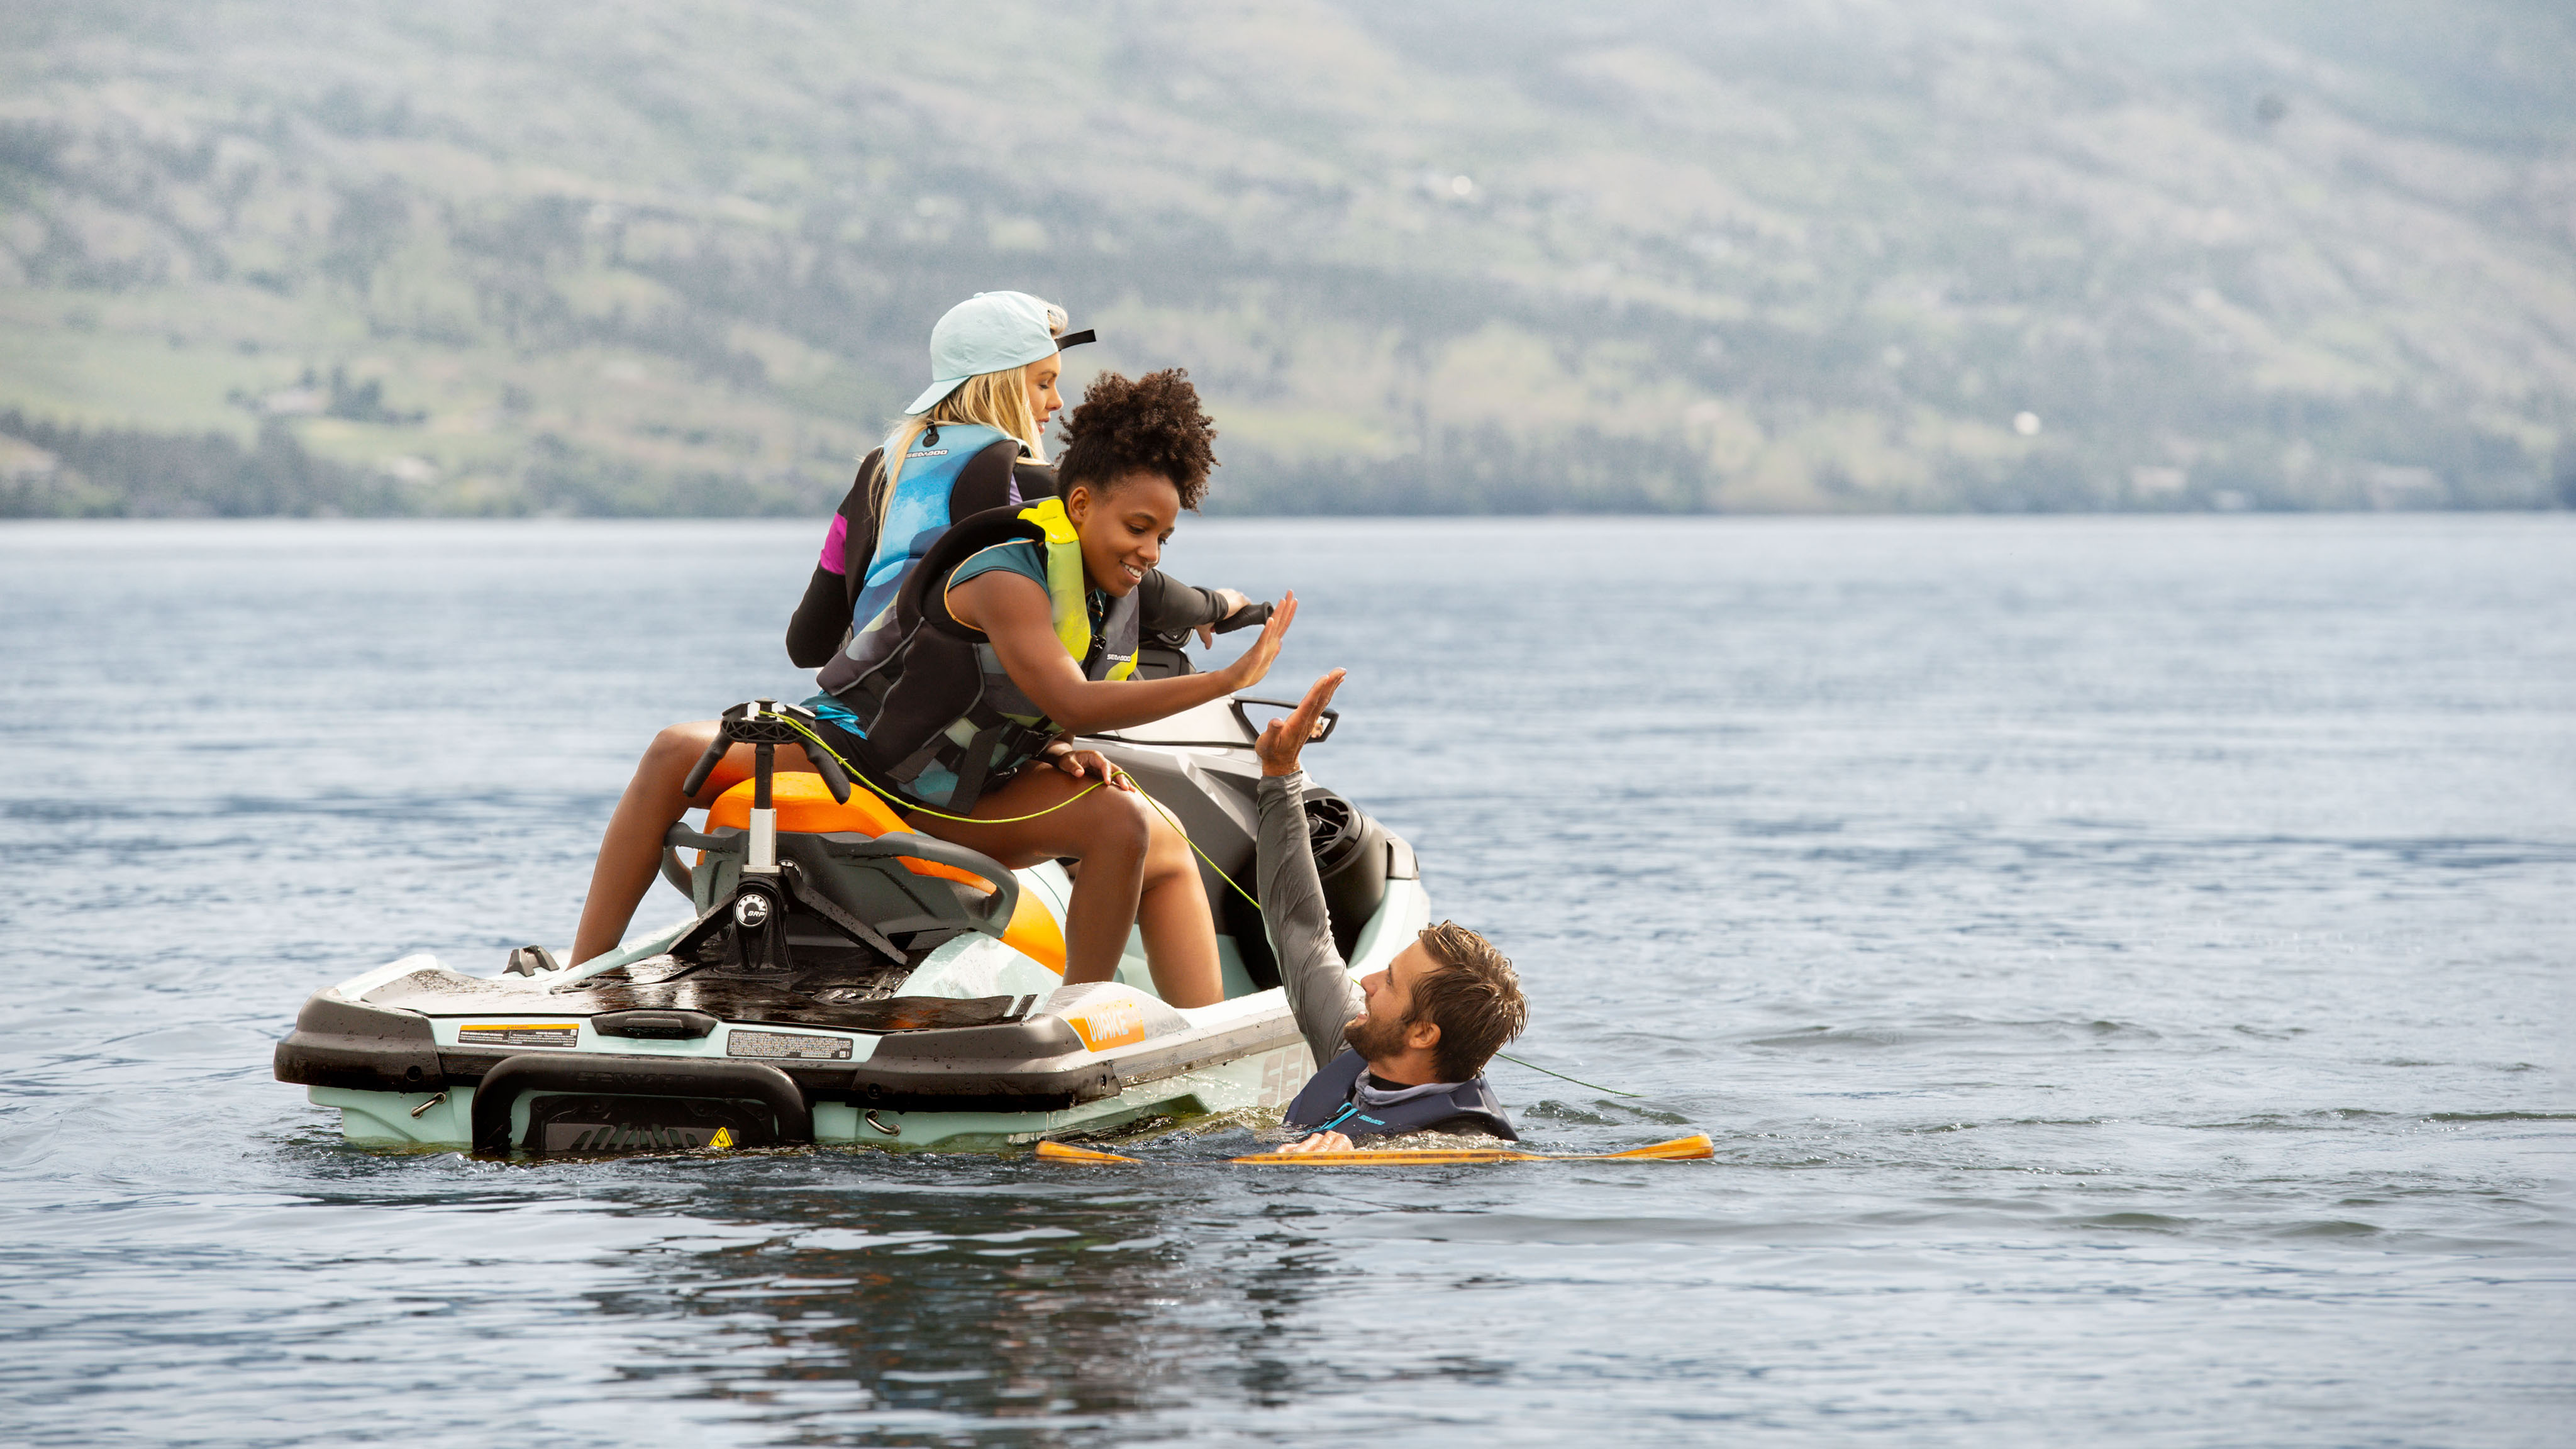 Hombres en el agua chocando los cinco con su amigo en una Sea-Doo Wake Pro